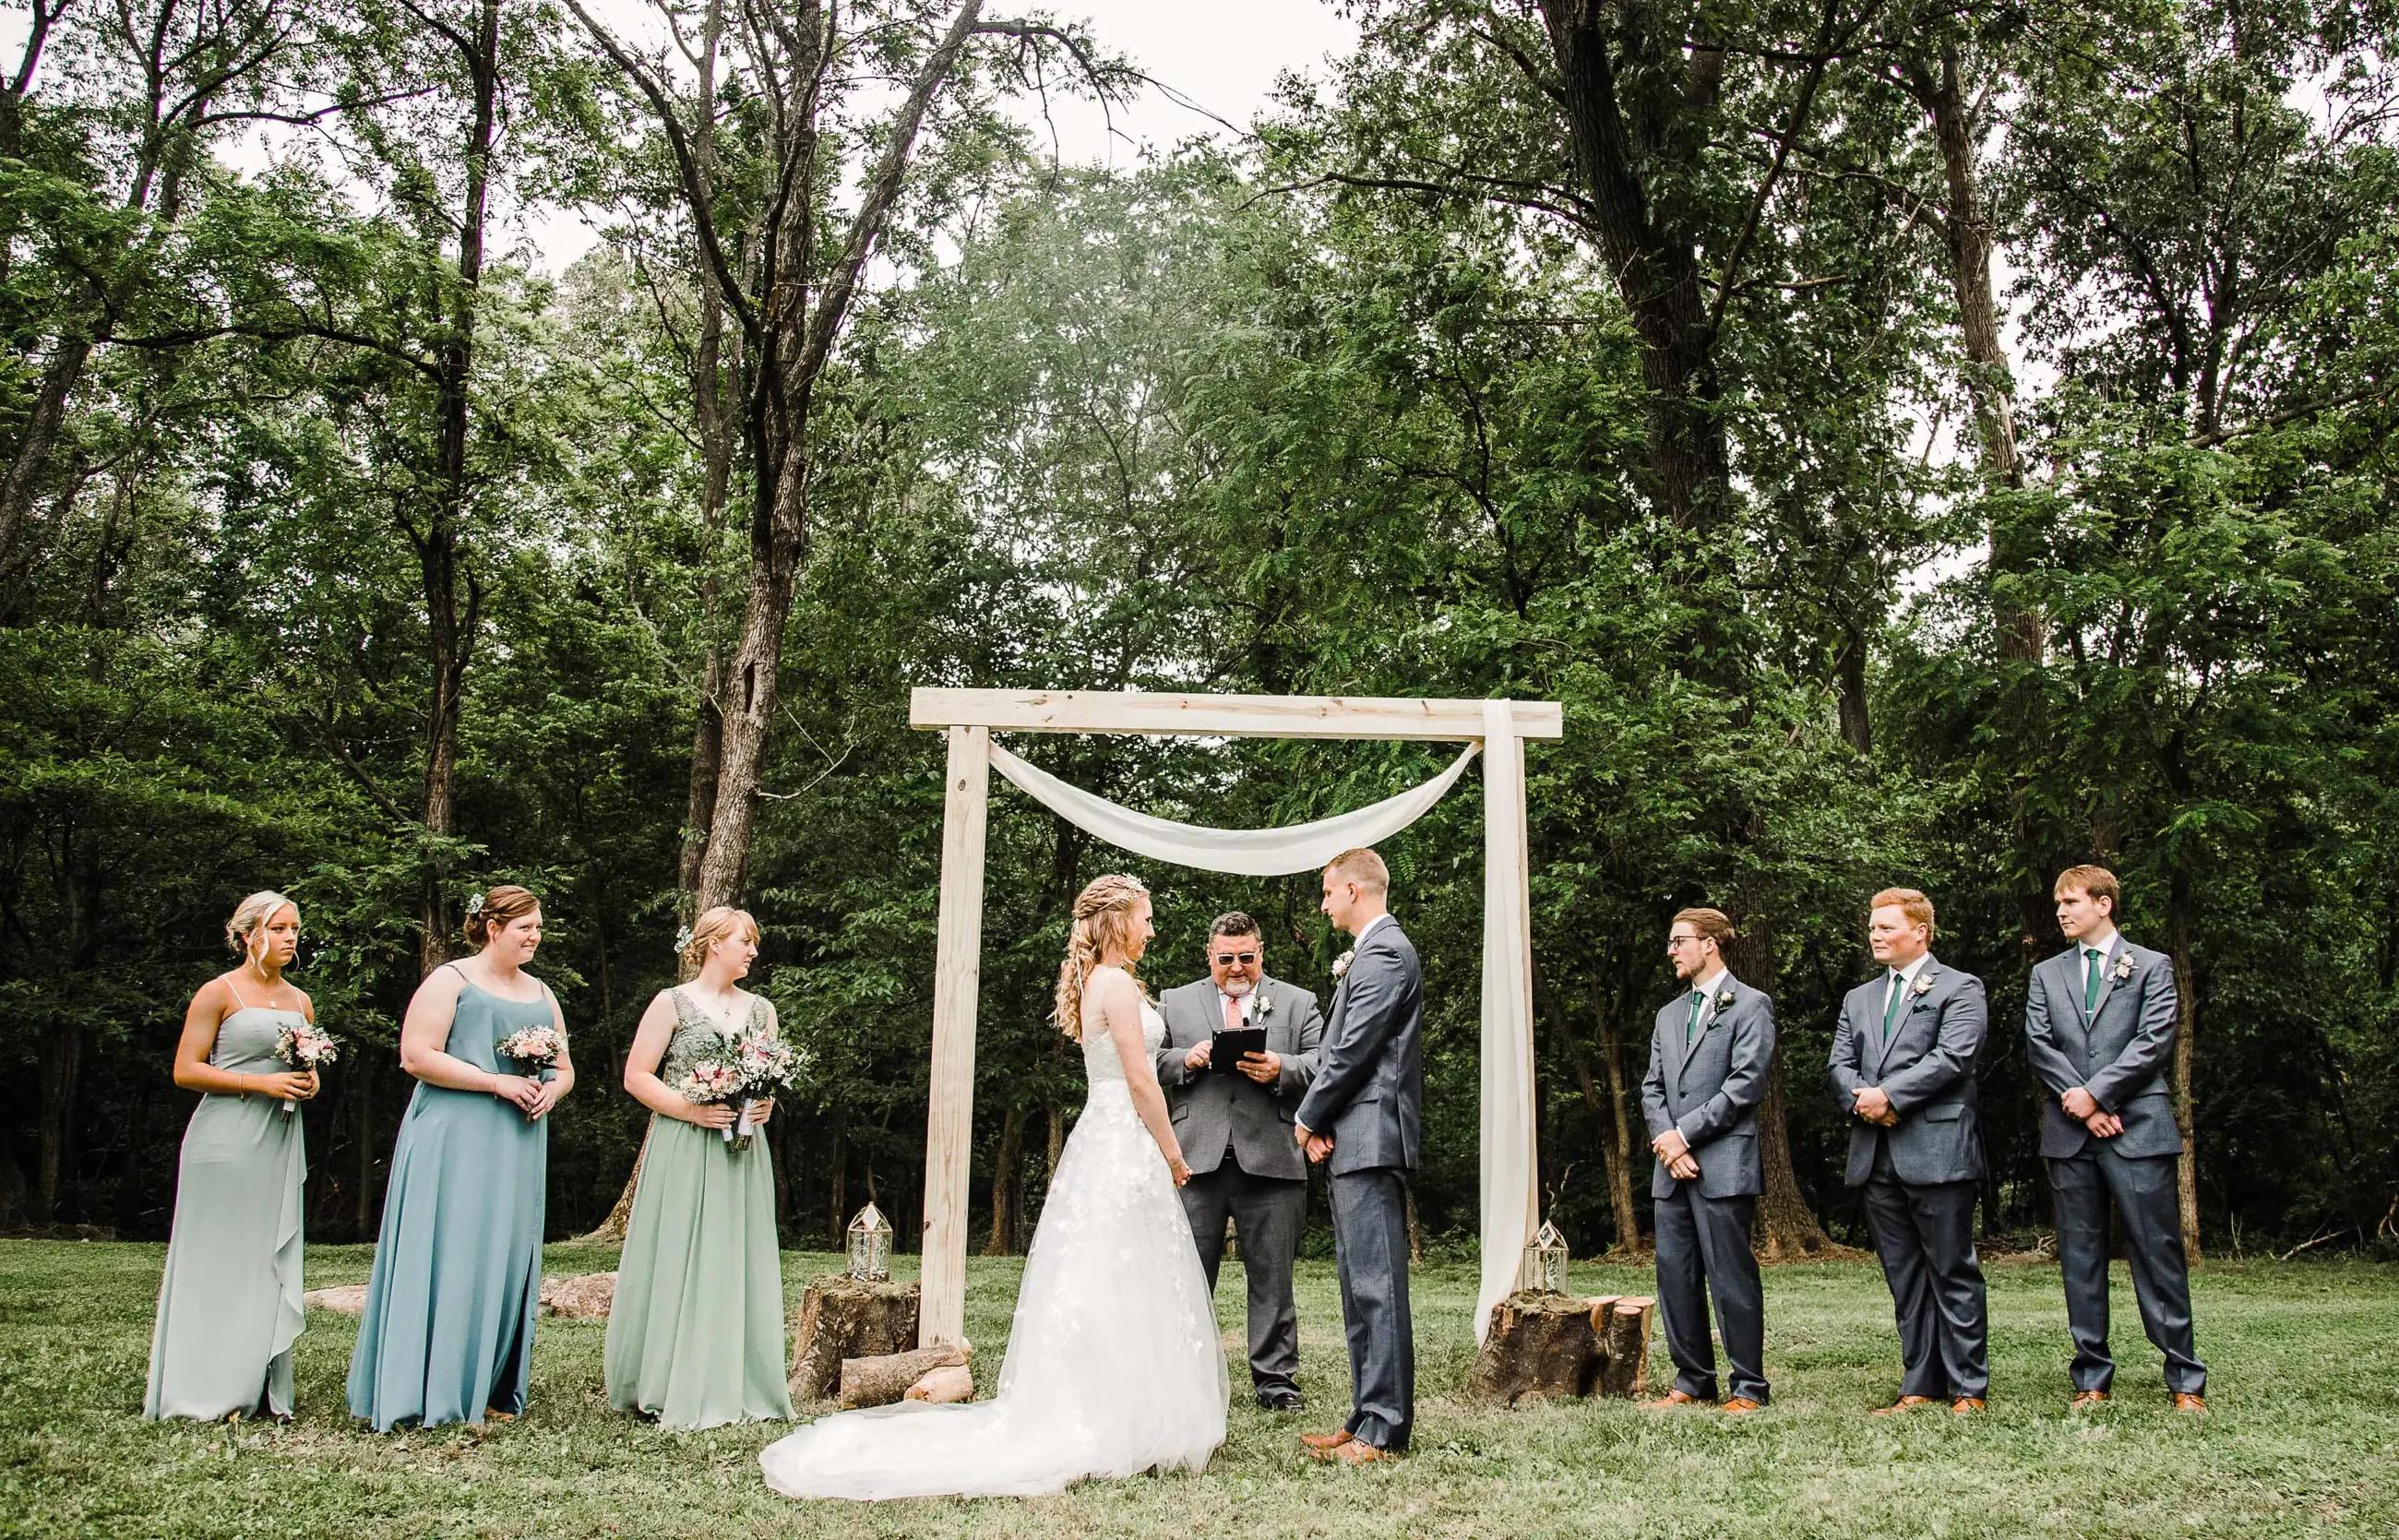 The Barn Wedding Venue in West Virginia